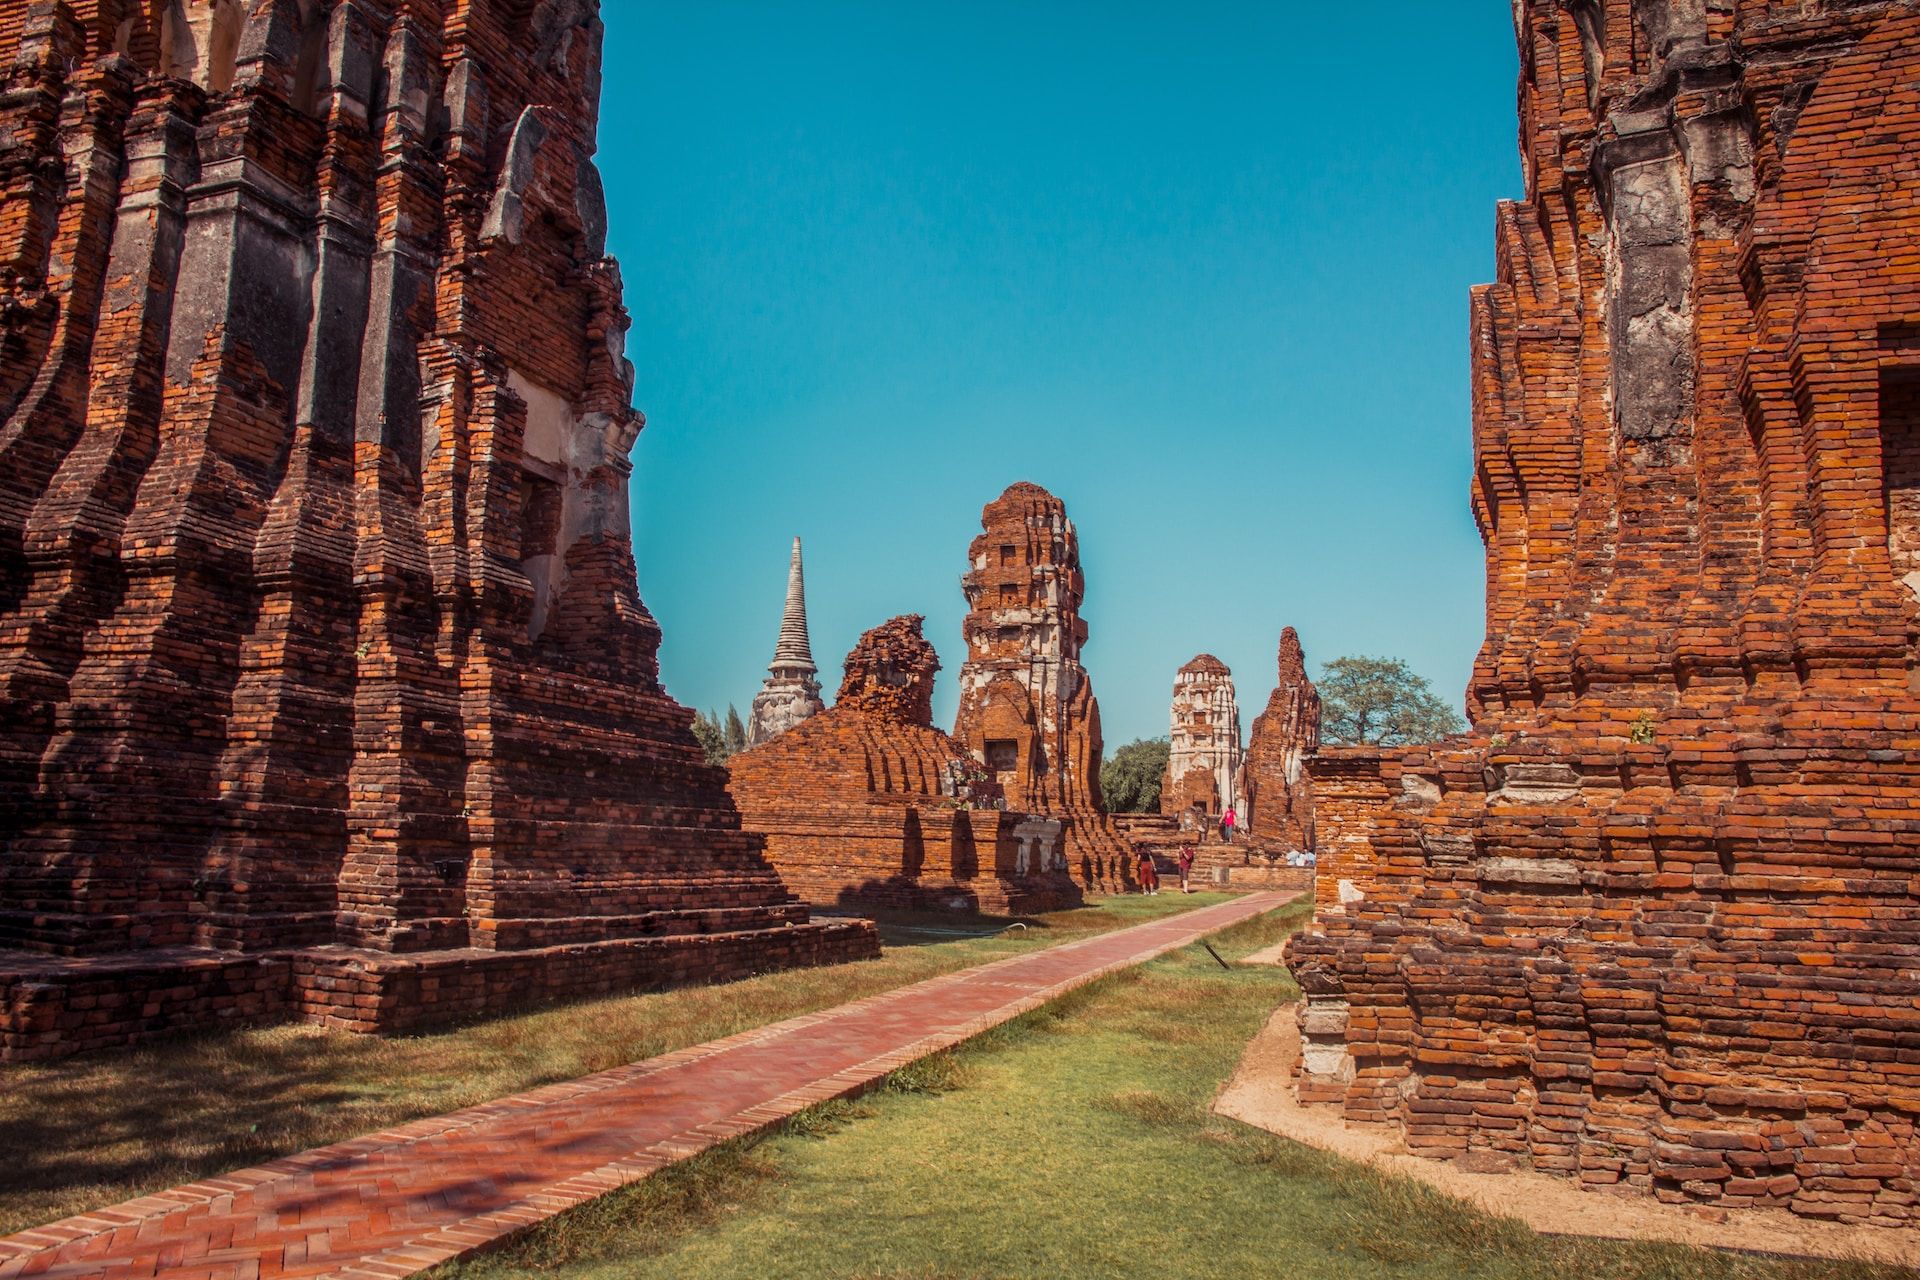 Ruins in Ayutthaya, Thailand